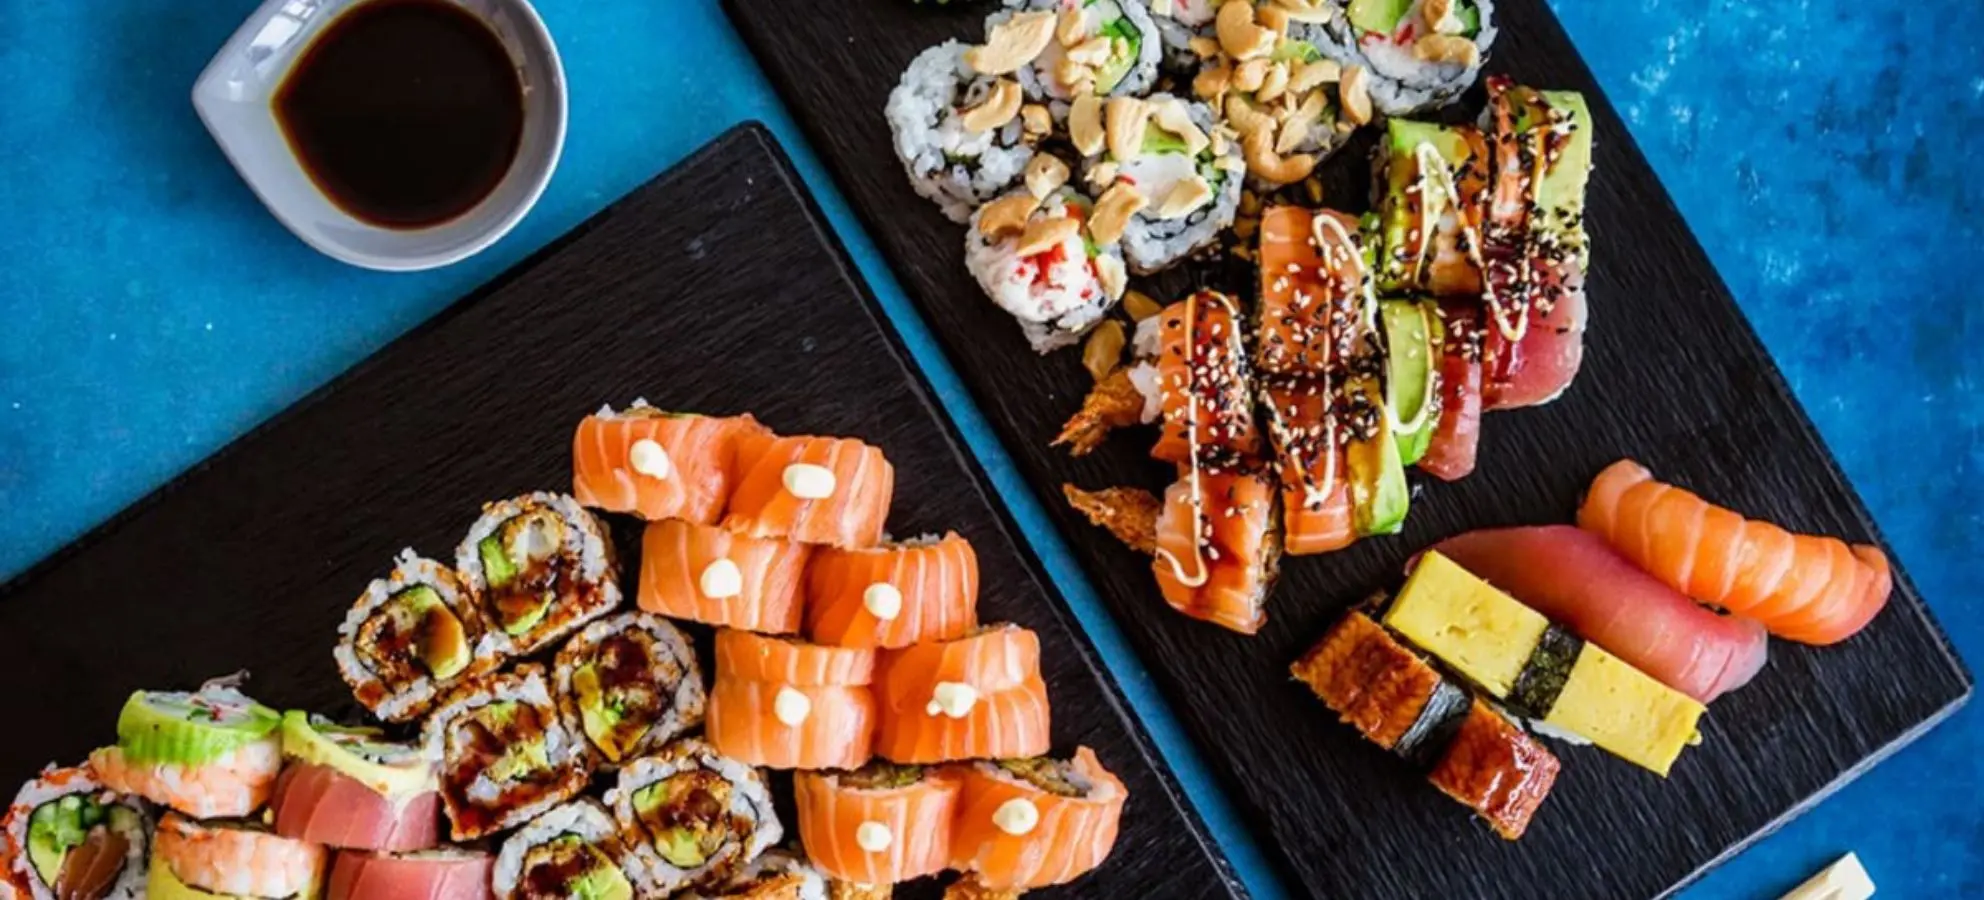 Sushi Time København